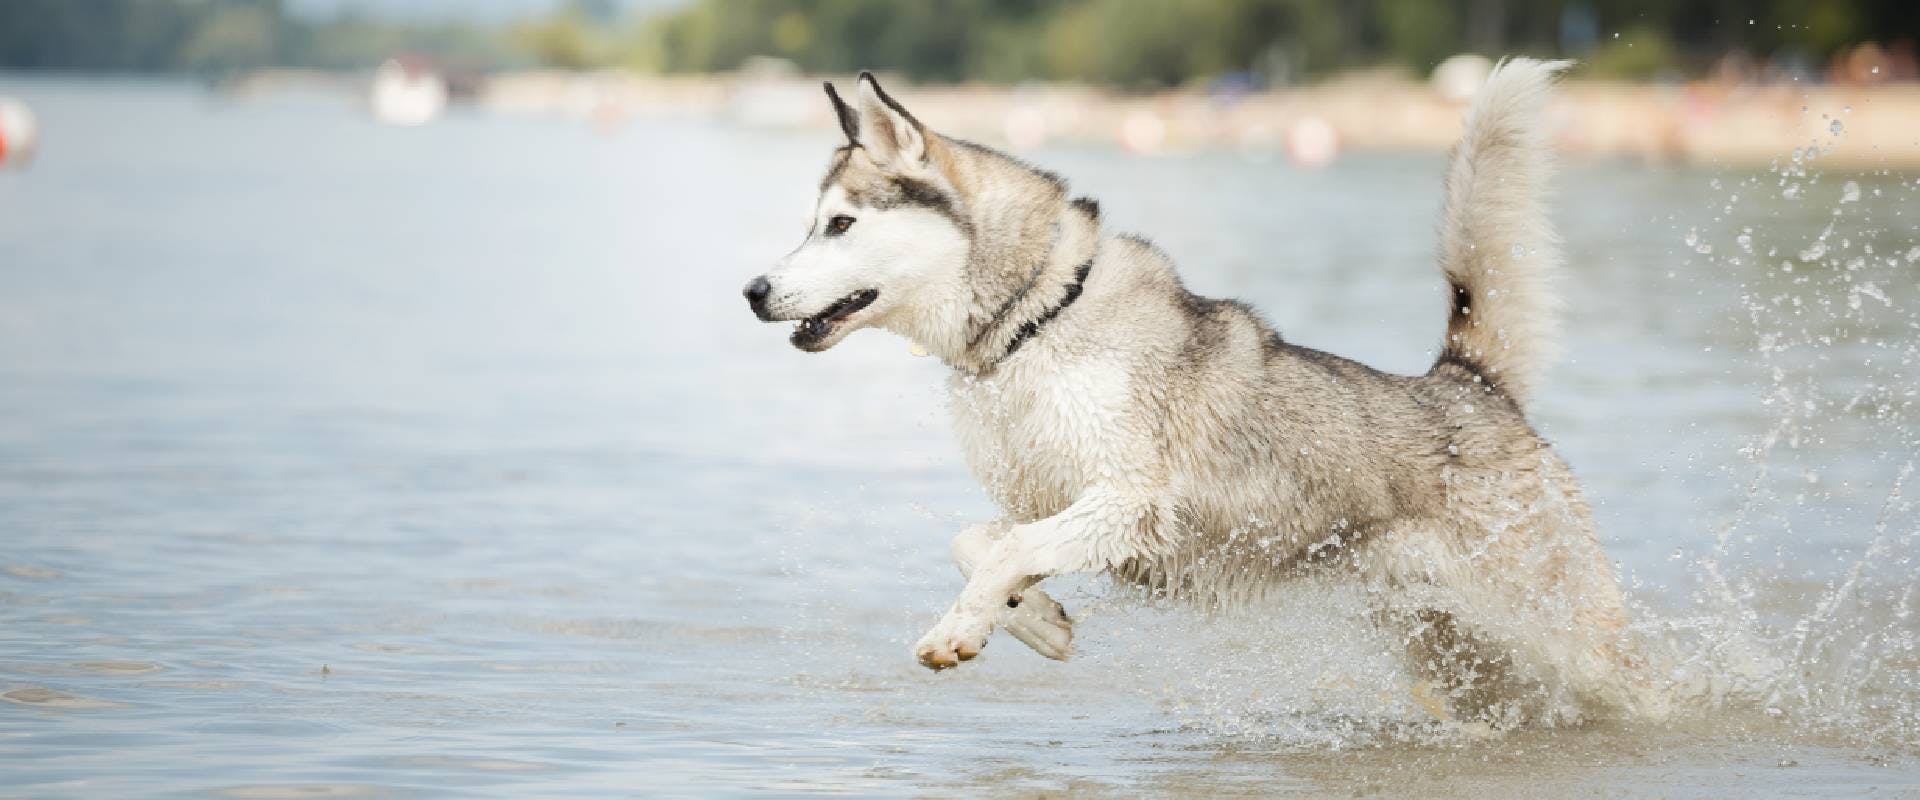 Husky running through water